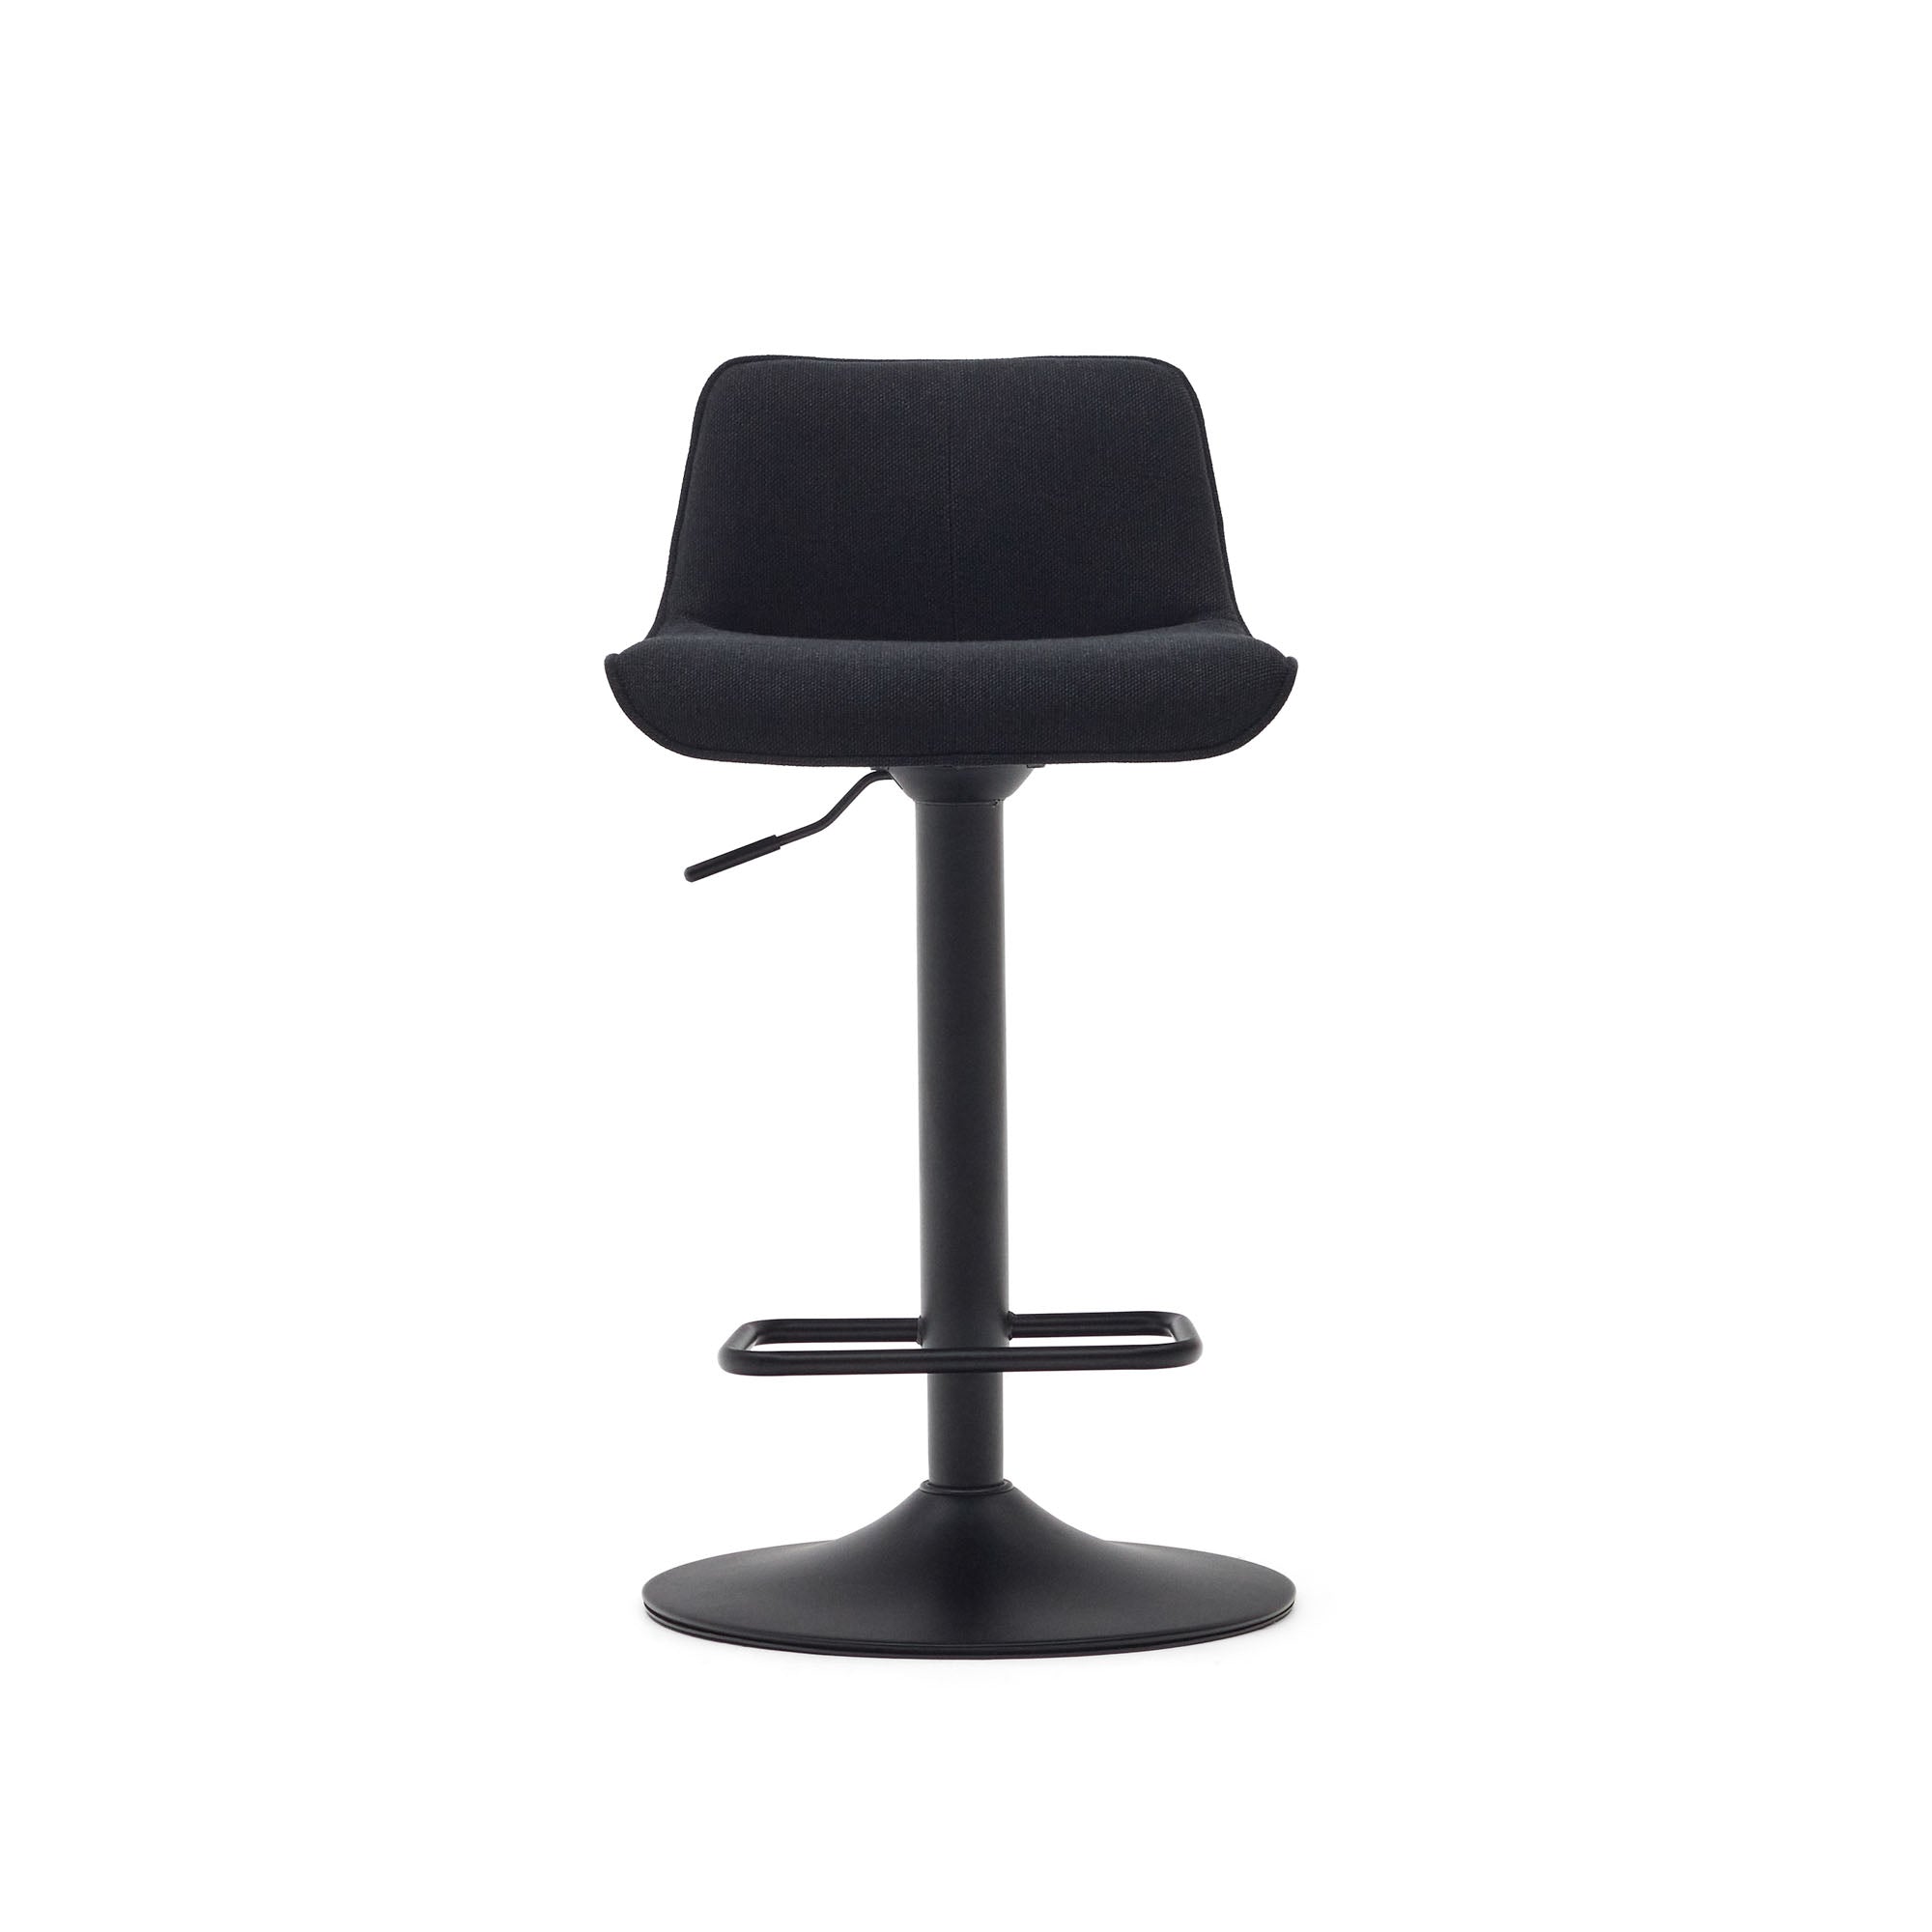 Zenda stool in black chenille and matt black steel 81-102 cm